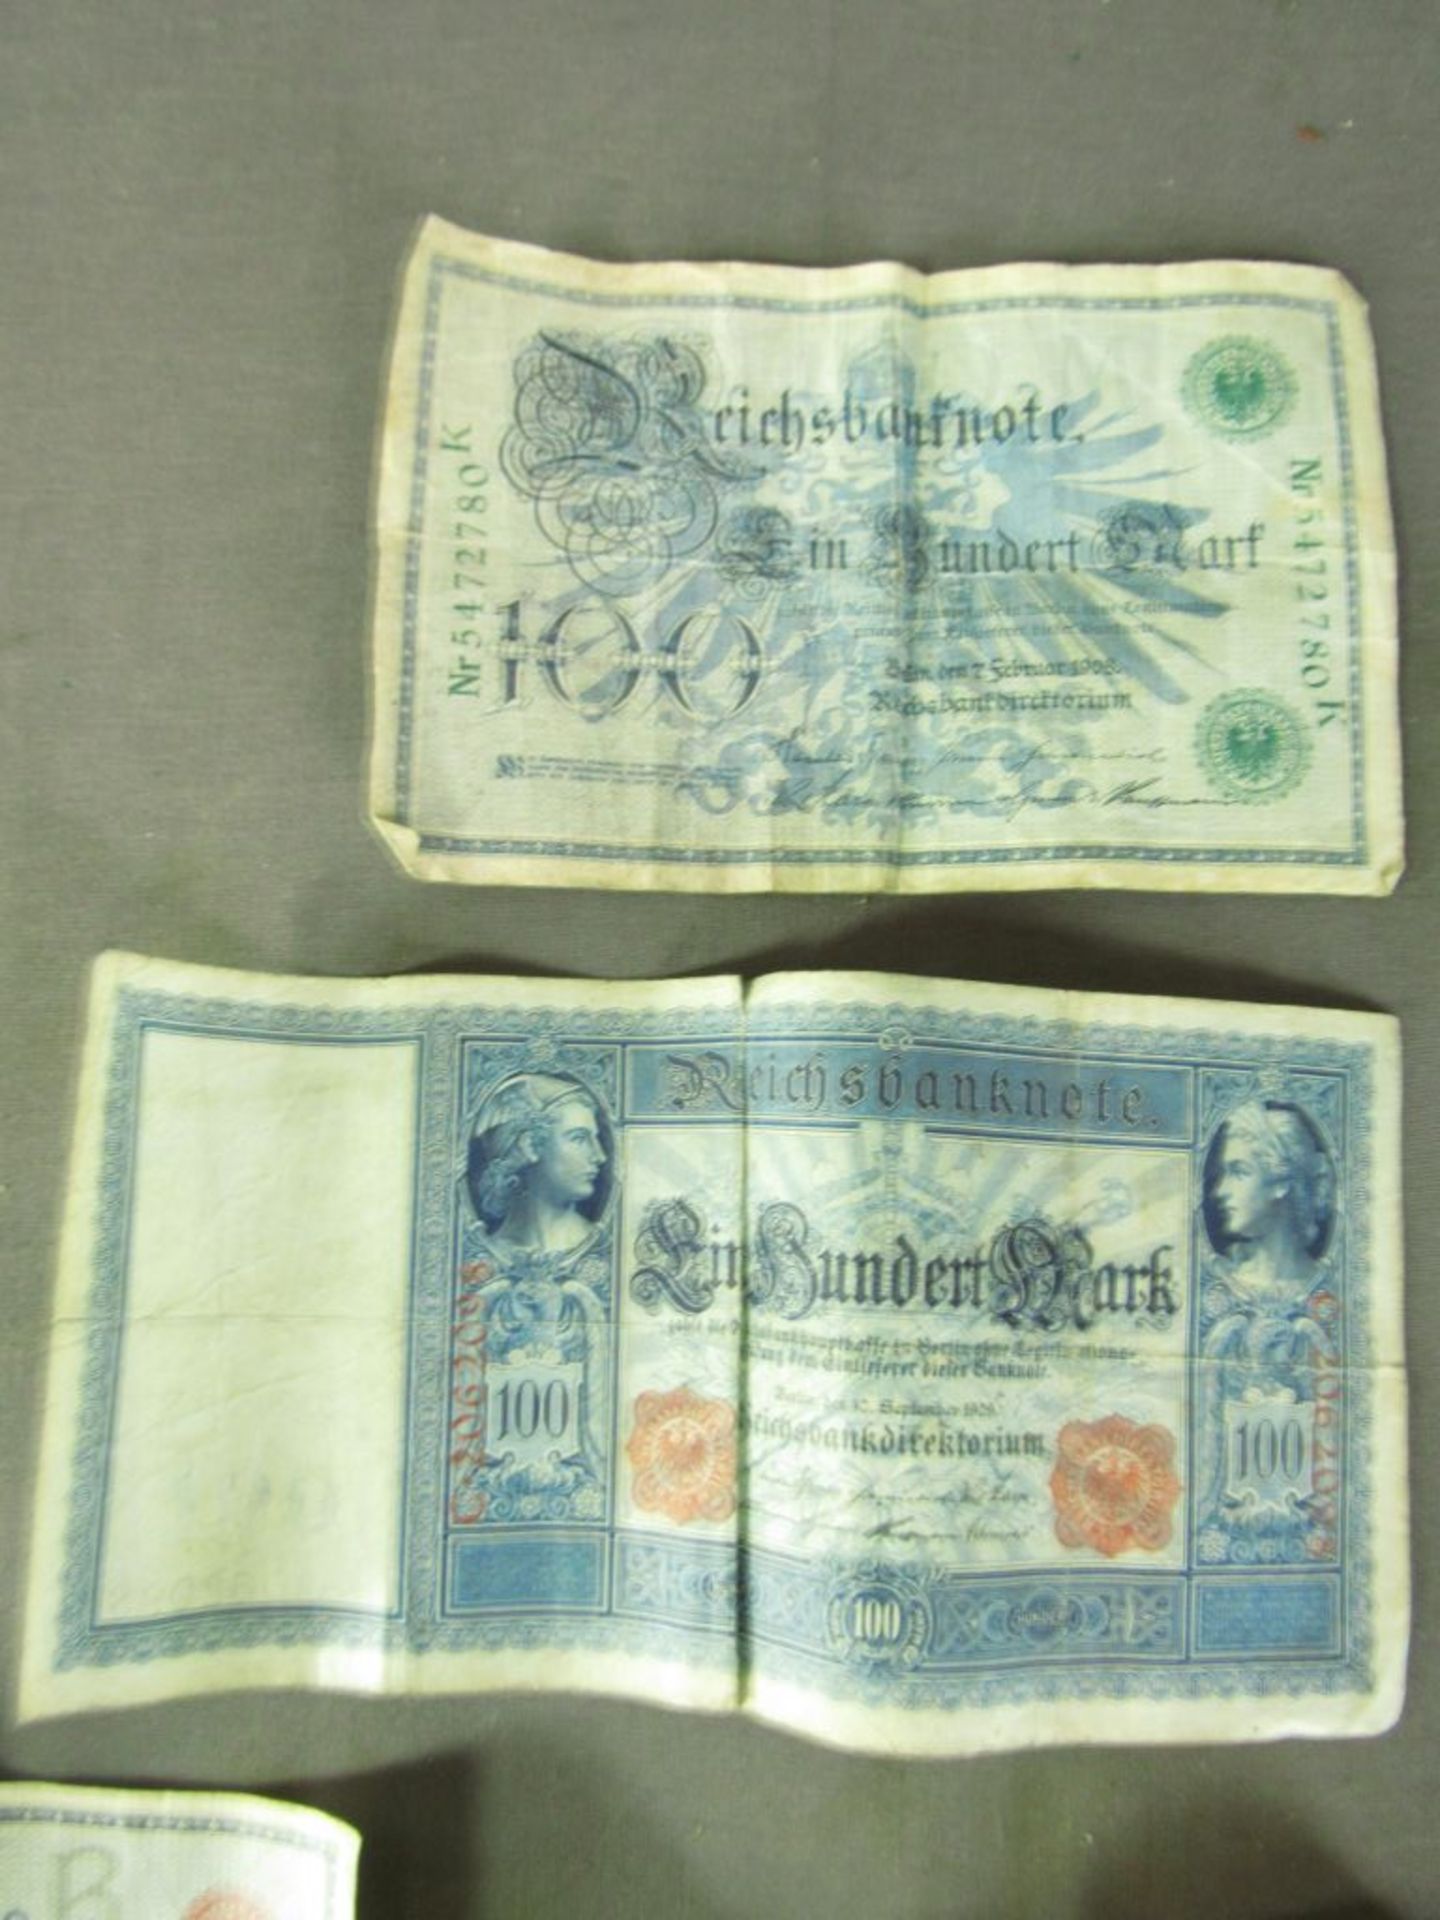 Kleines Konvolut Banknoten Scheine - Image 2 of 4